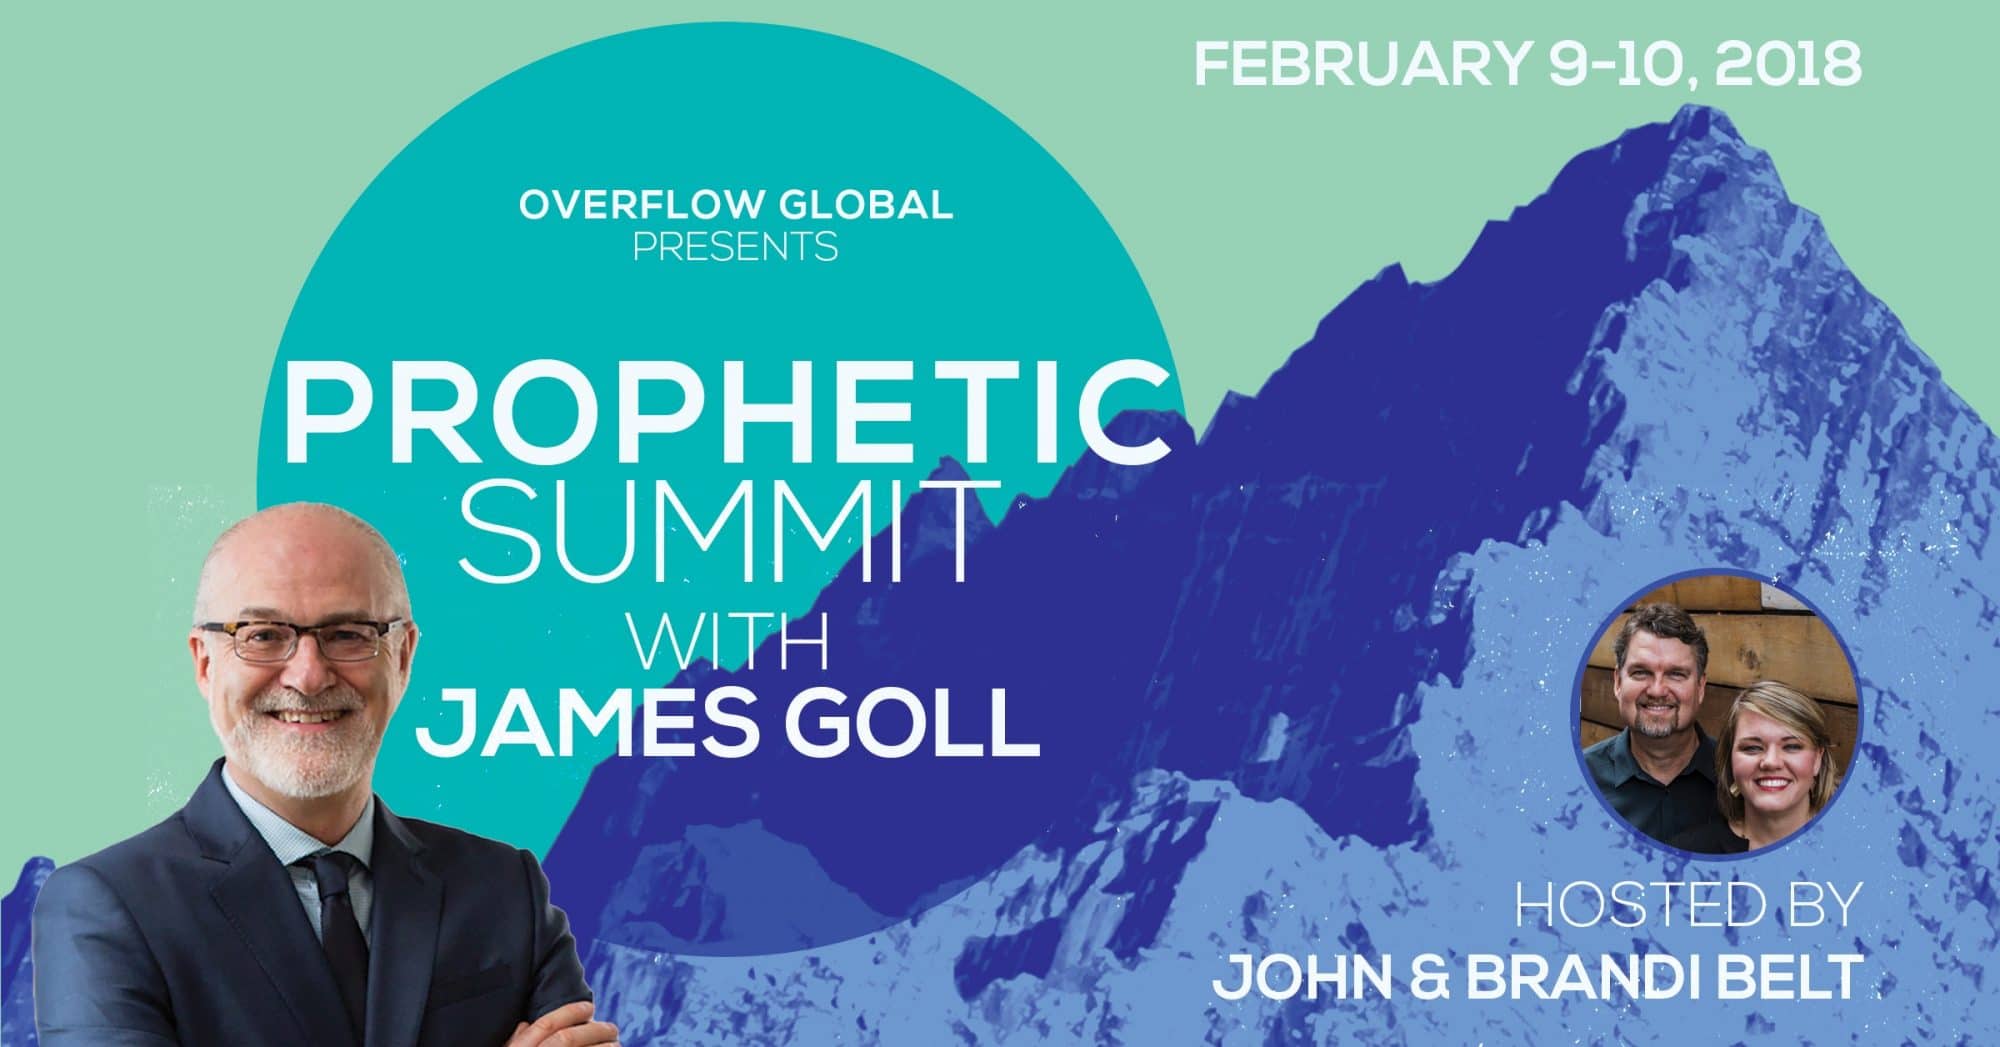 Prophetic Summit